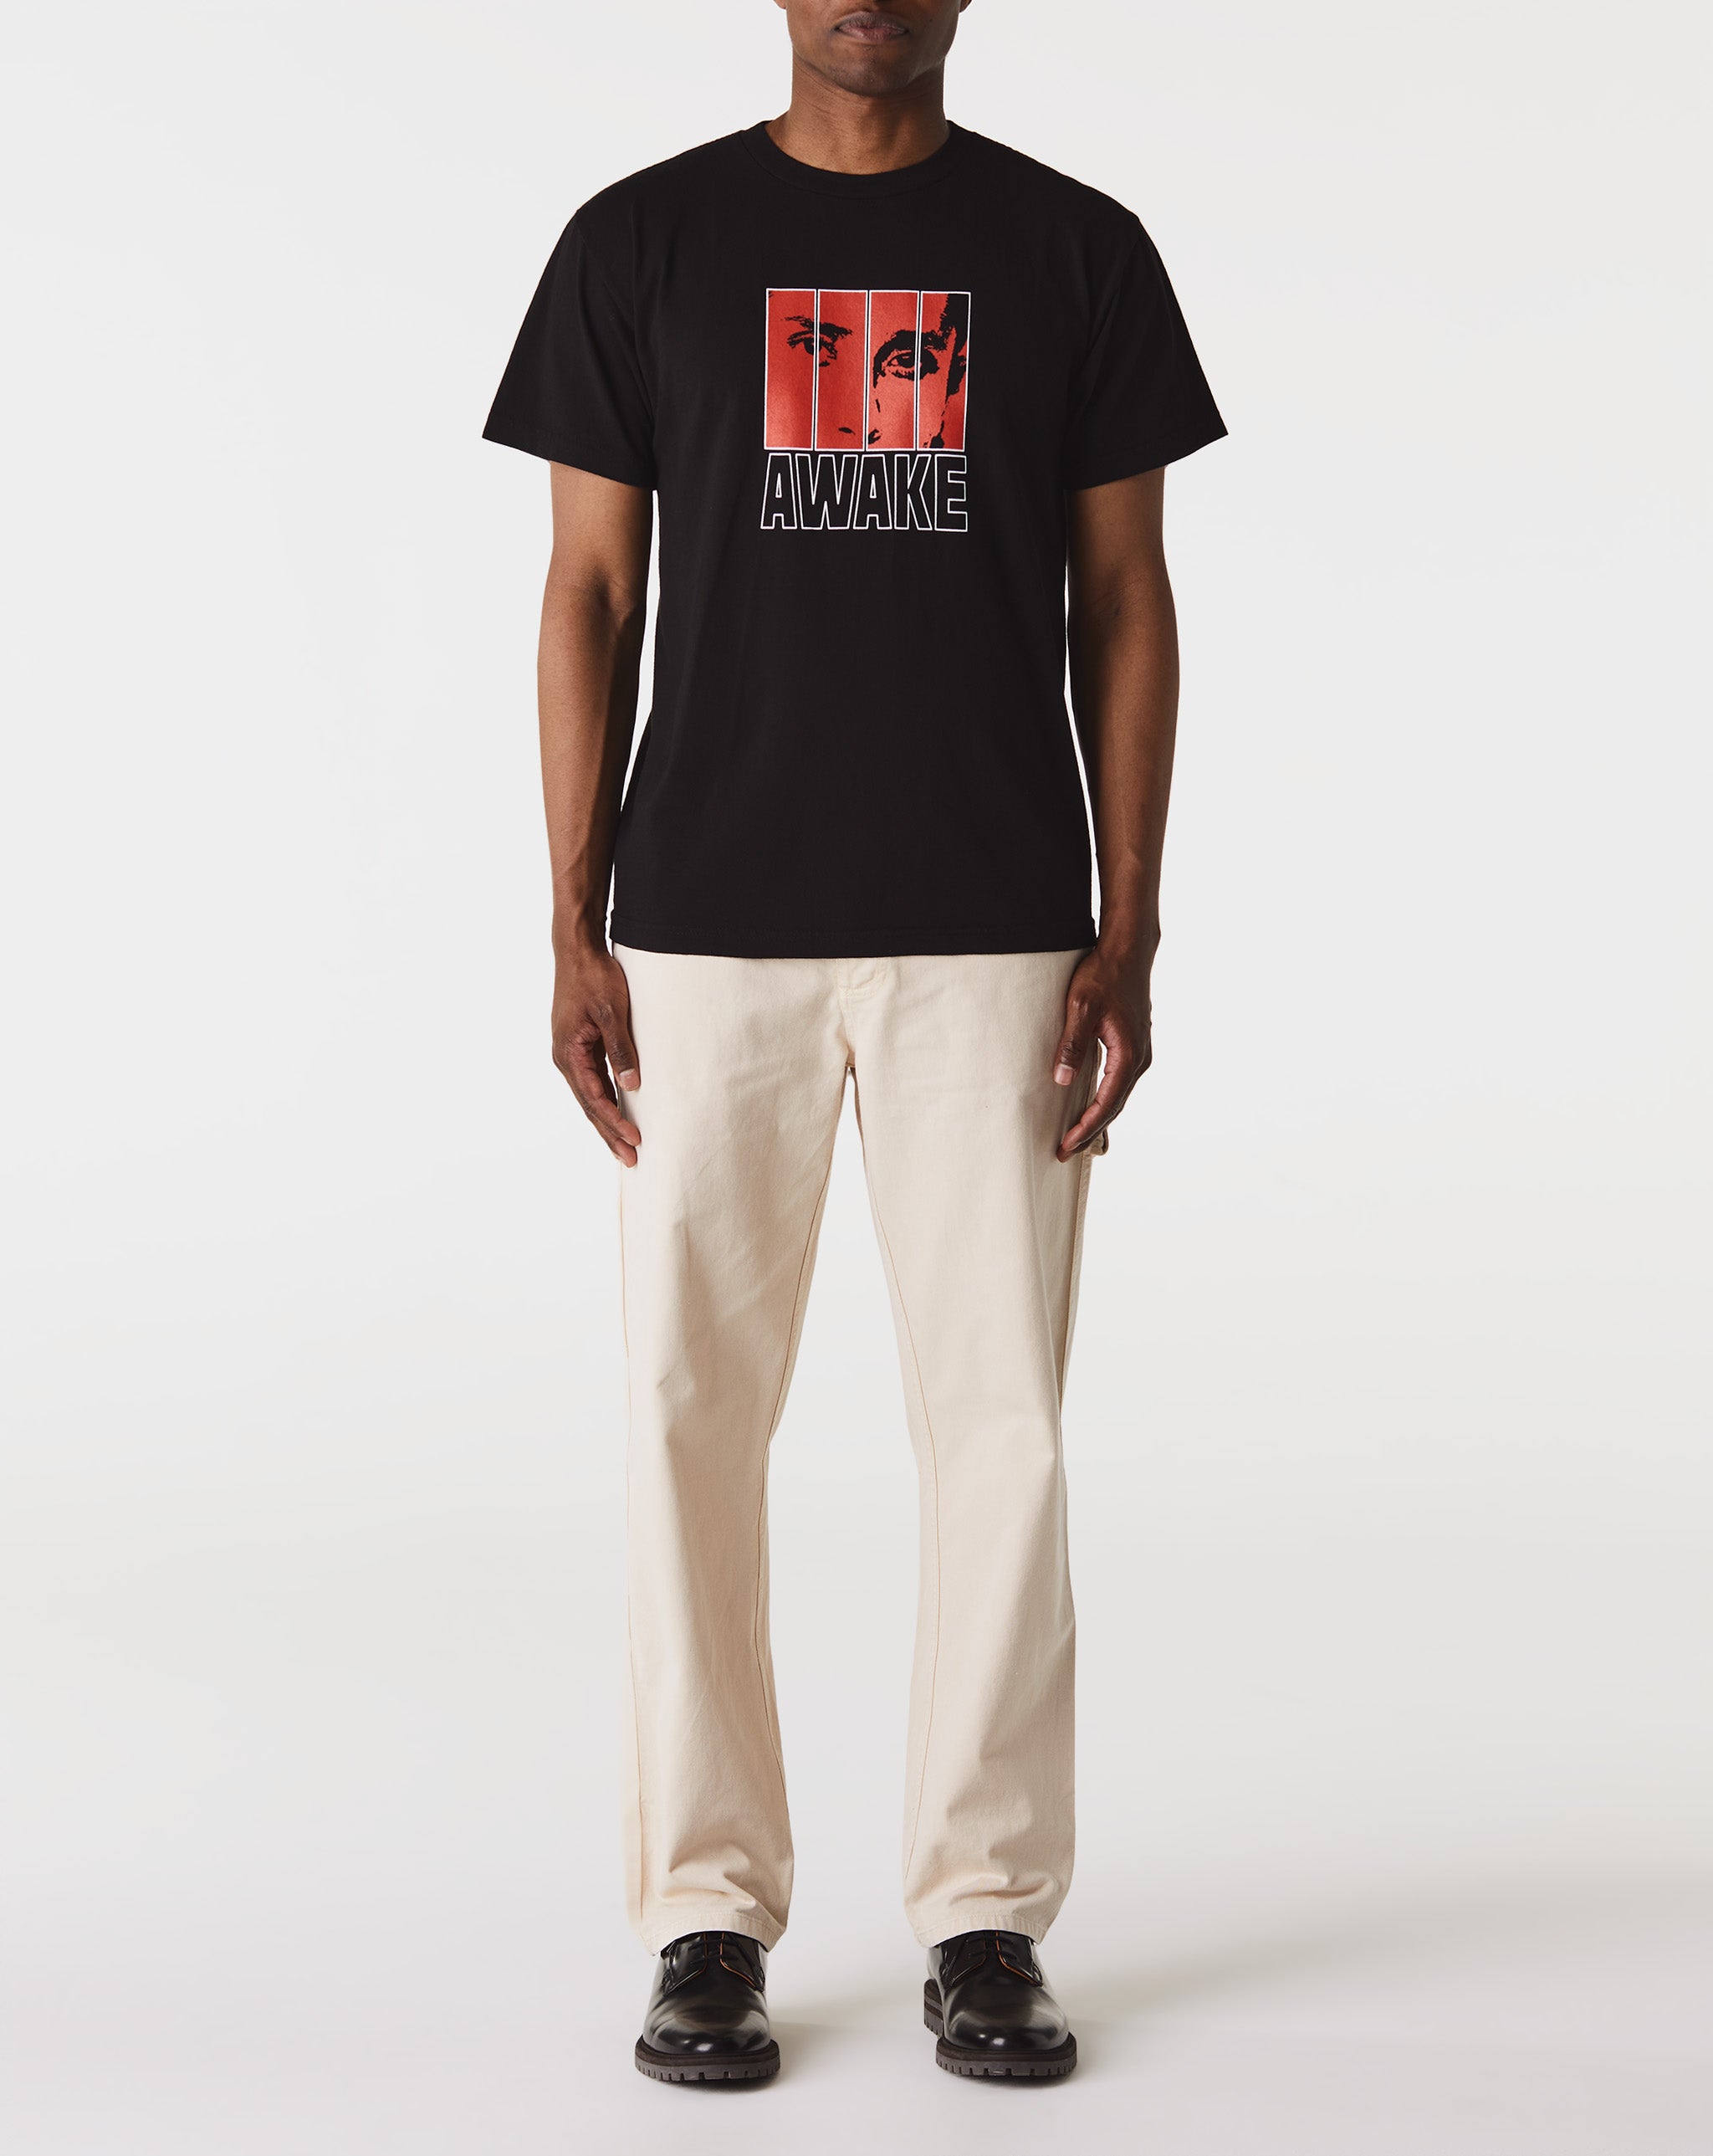 Awake NY Vegas T-Shirt  - Cheap 127-0 Jordan outlet